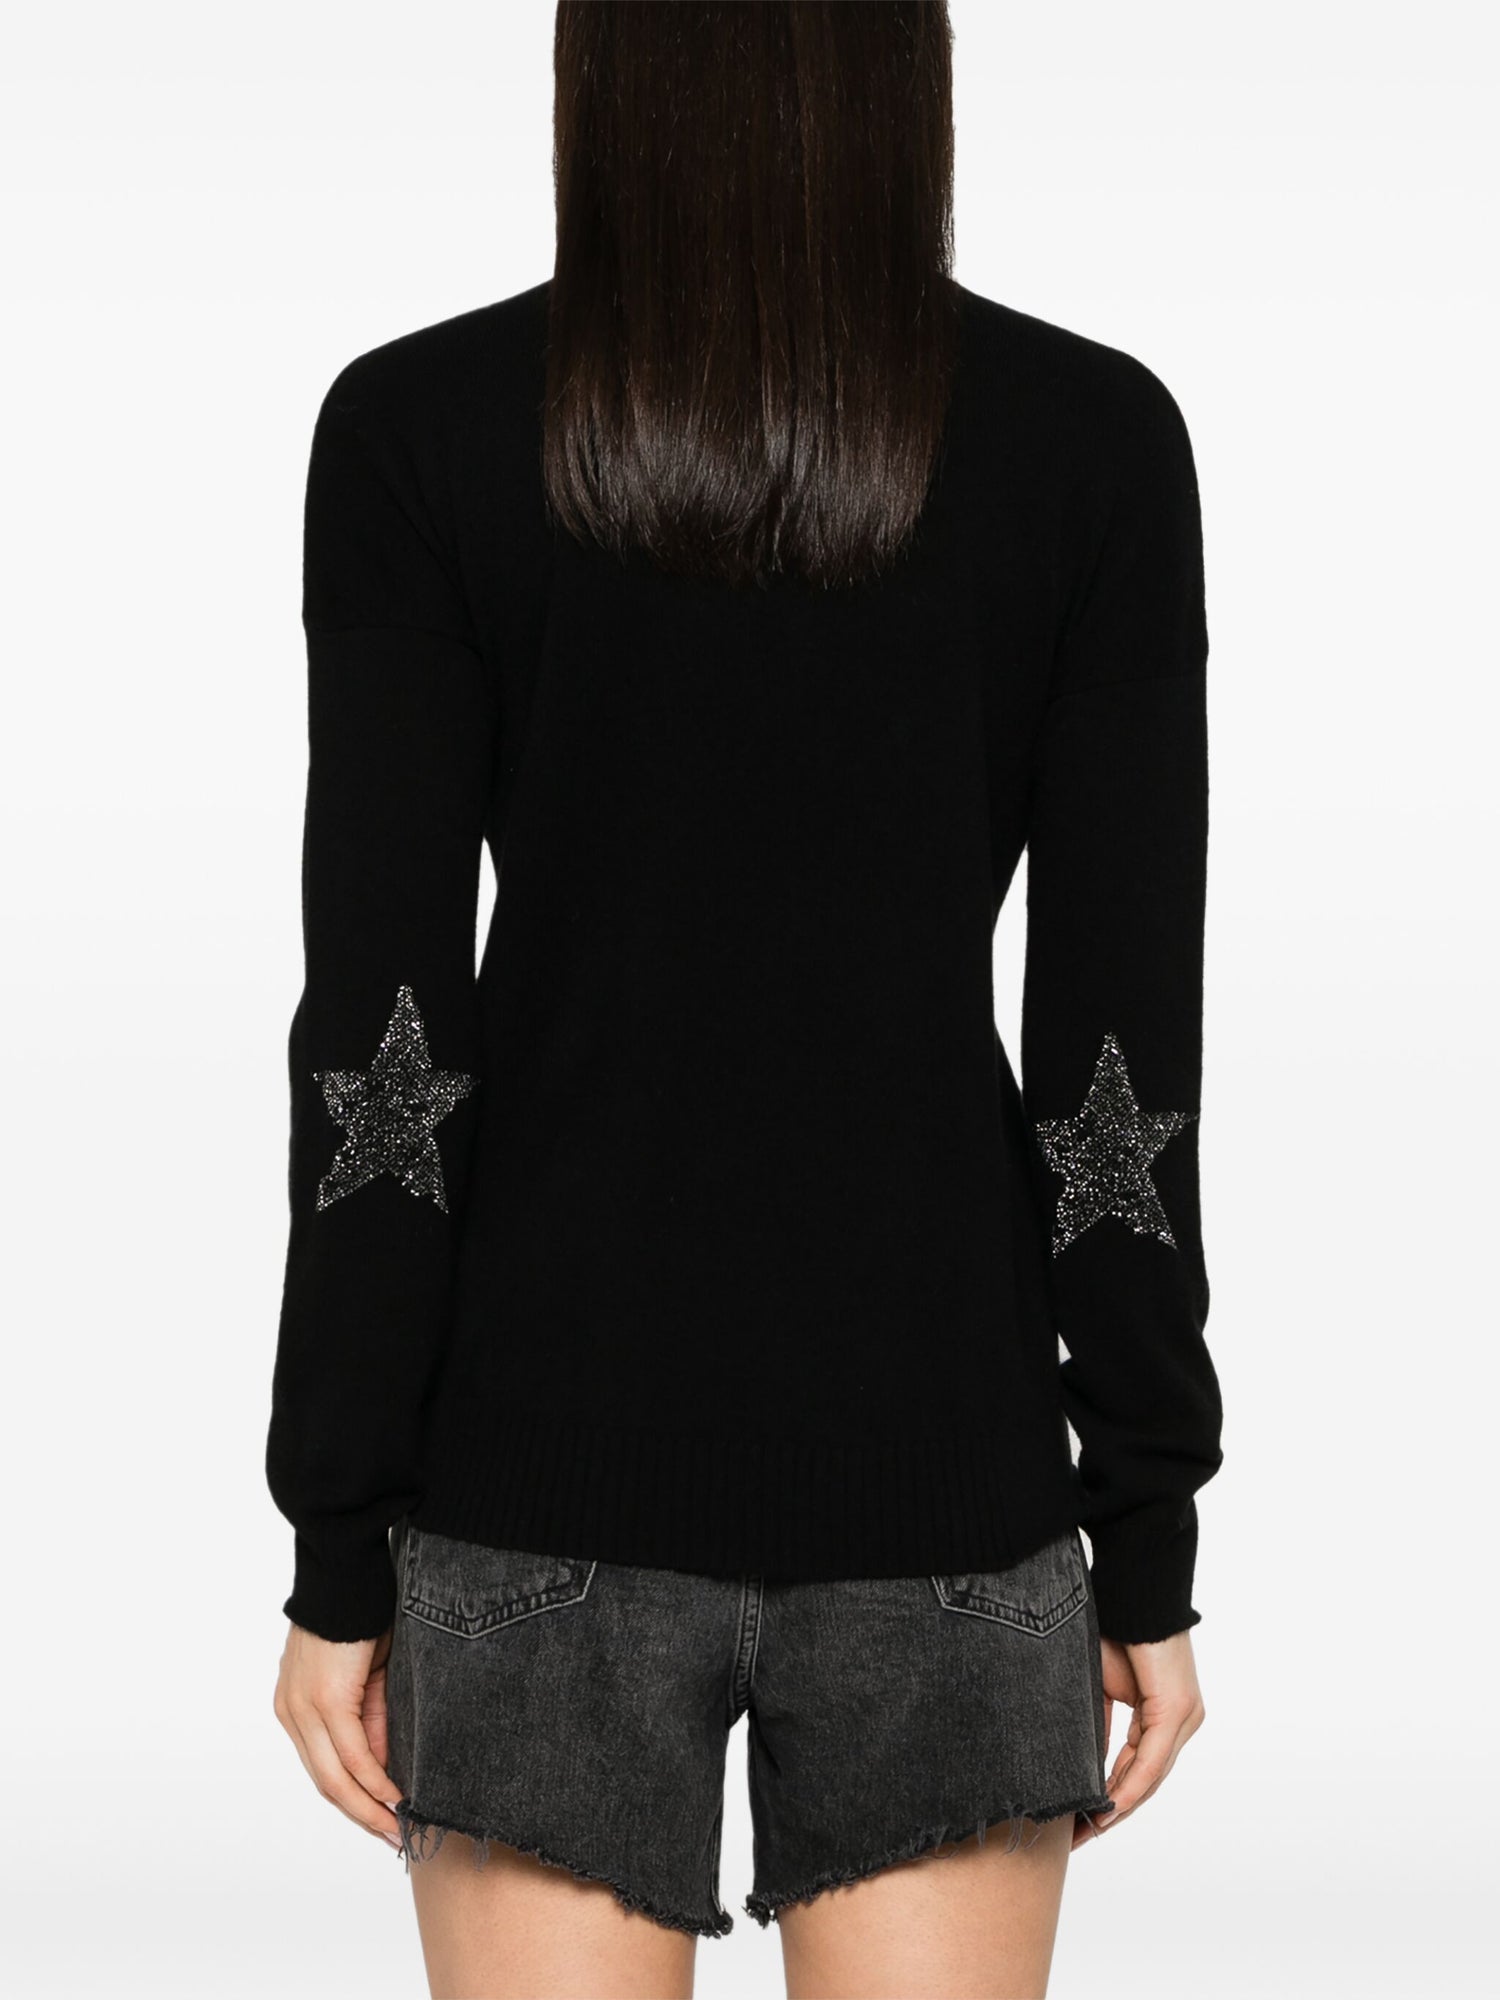 VIVI PATCH LUREX DESTROY cashmere sweater, black